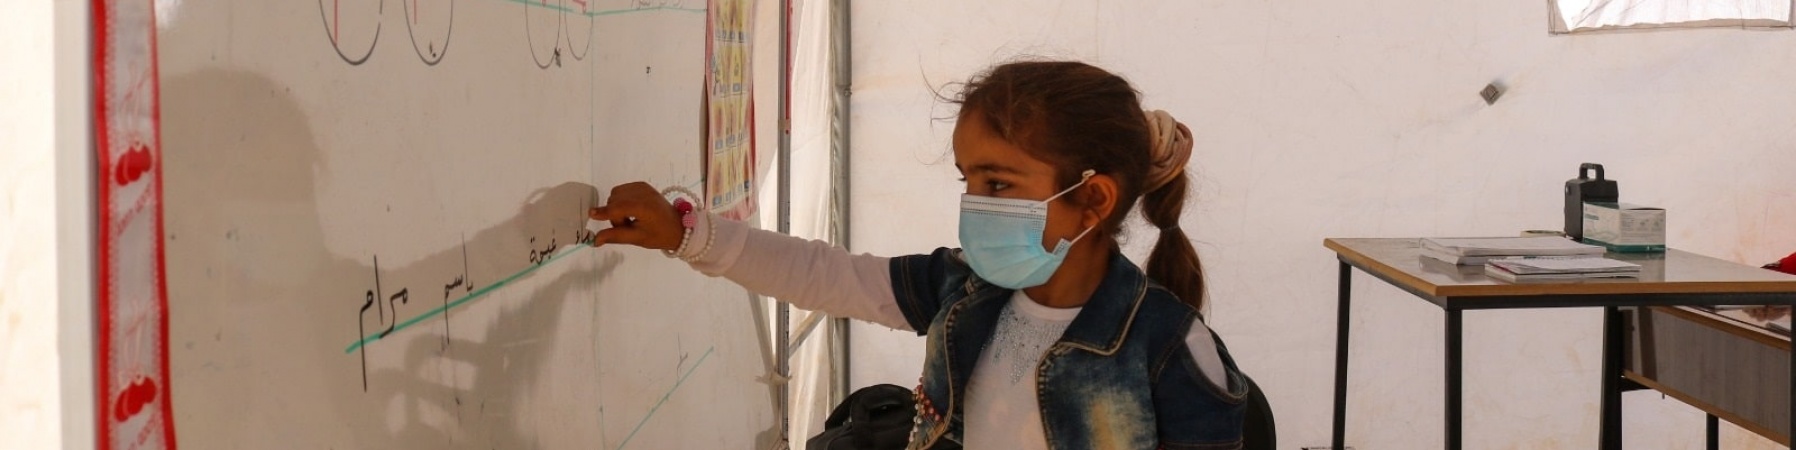 bambina scrive su una lavagna bianca in un aula, indossa una mascherina chirurgica per proteggersi dal Covid-19